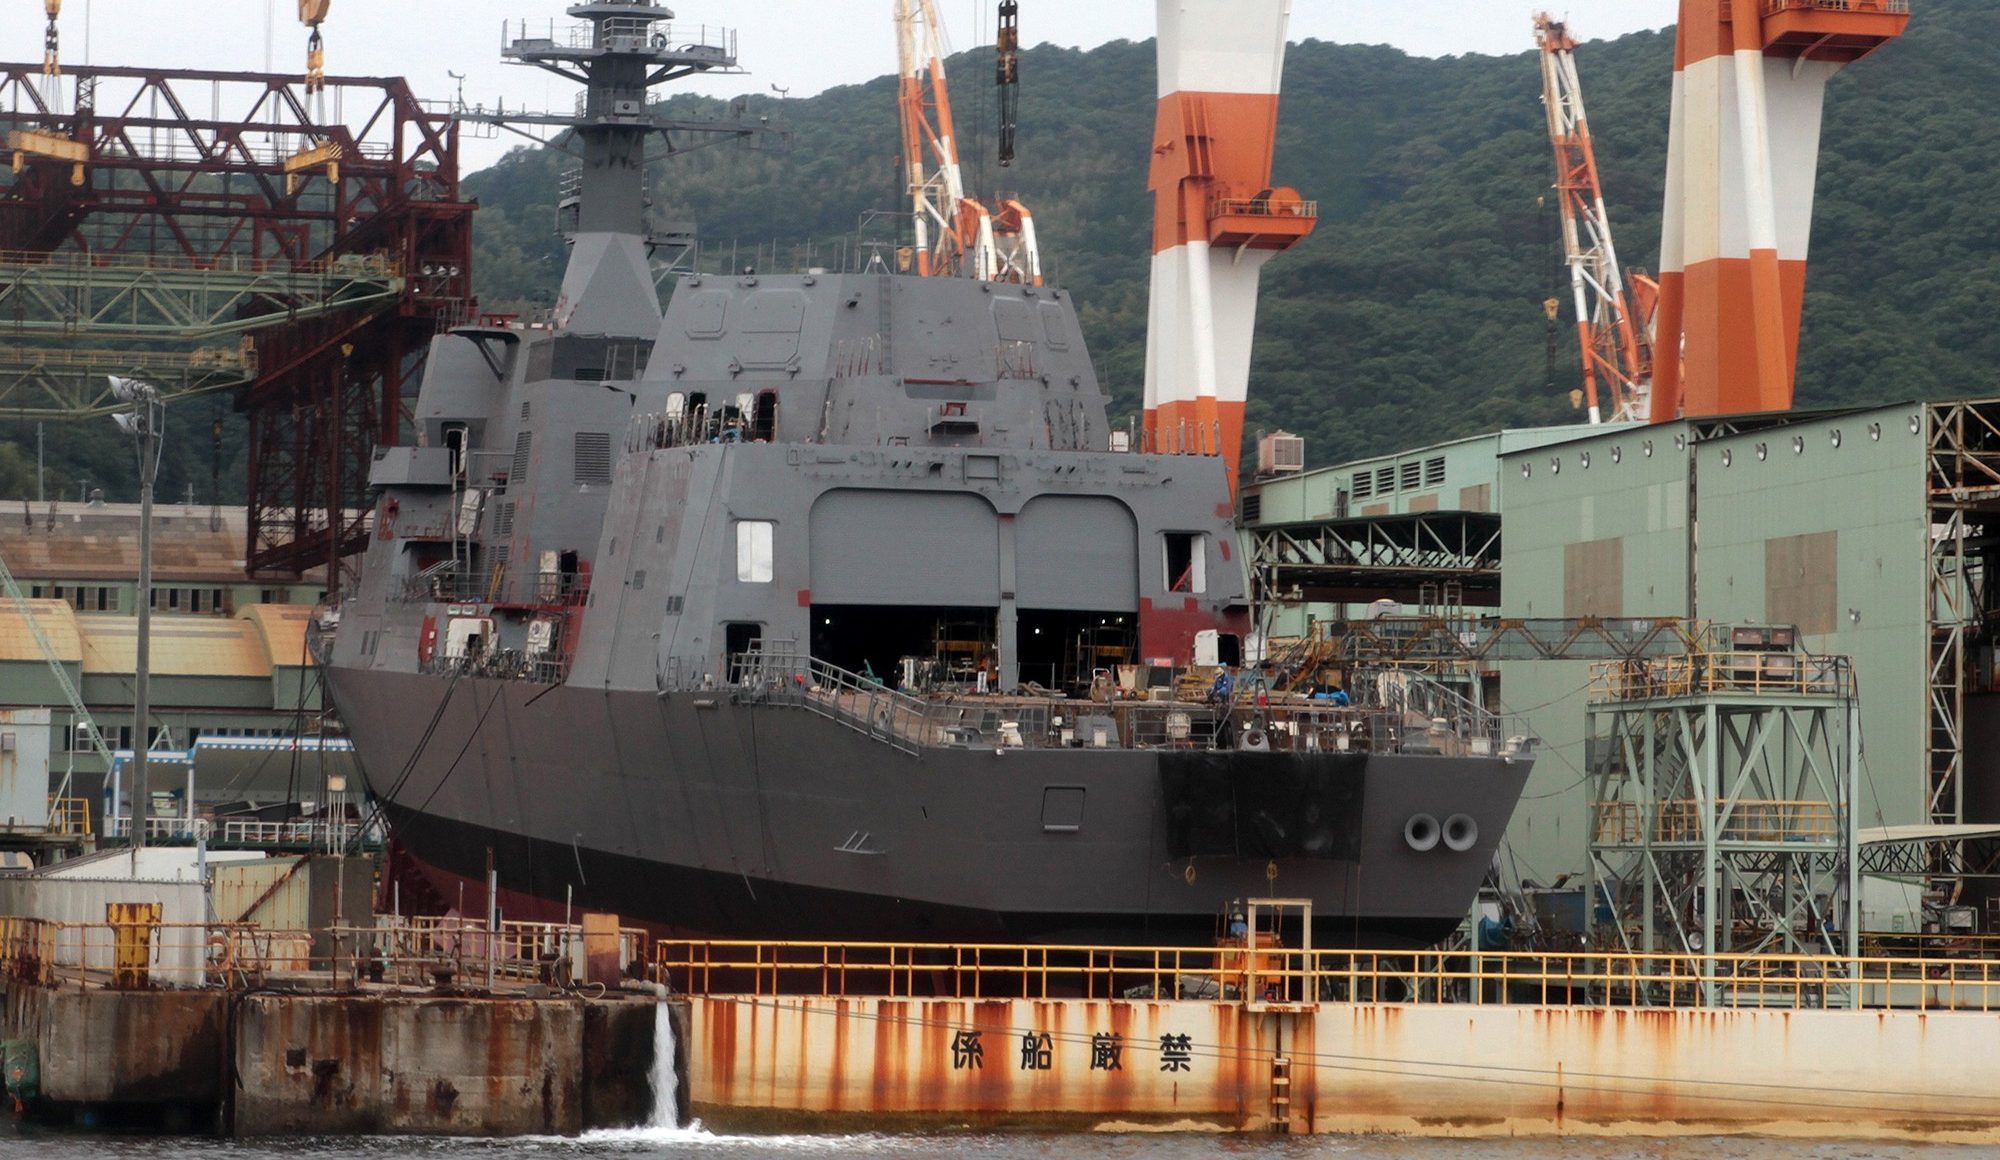 Japan's Defense Industrial Base - ISIC Japan - International